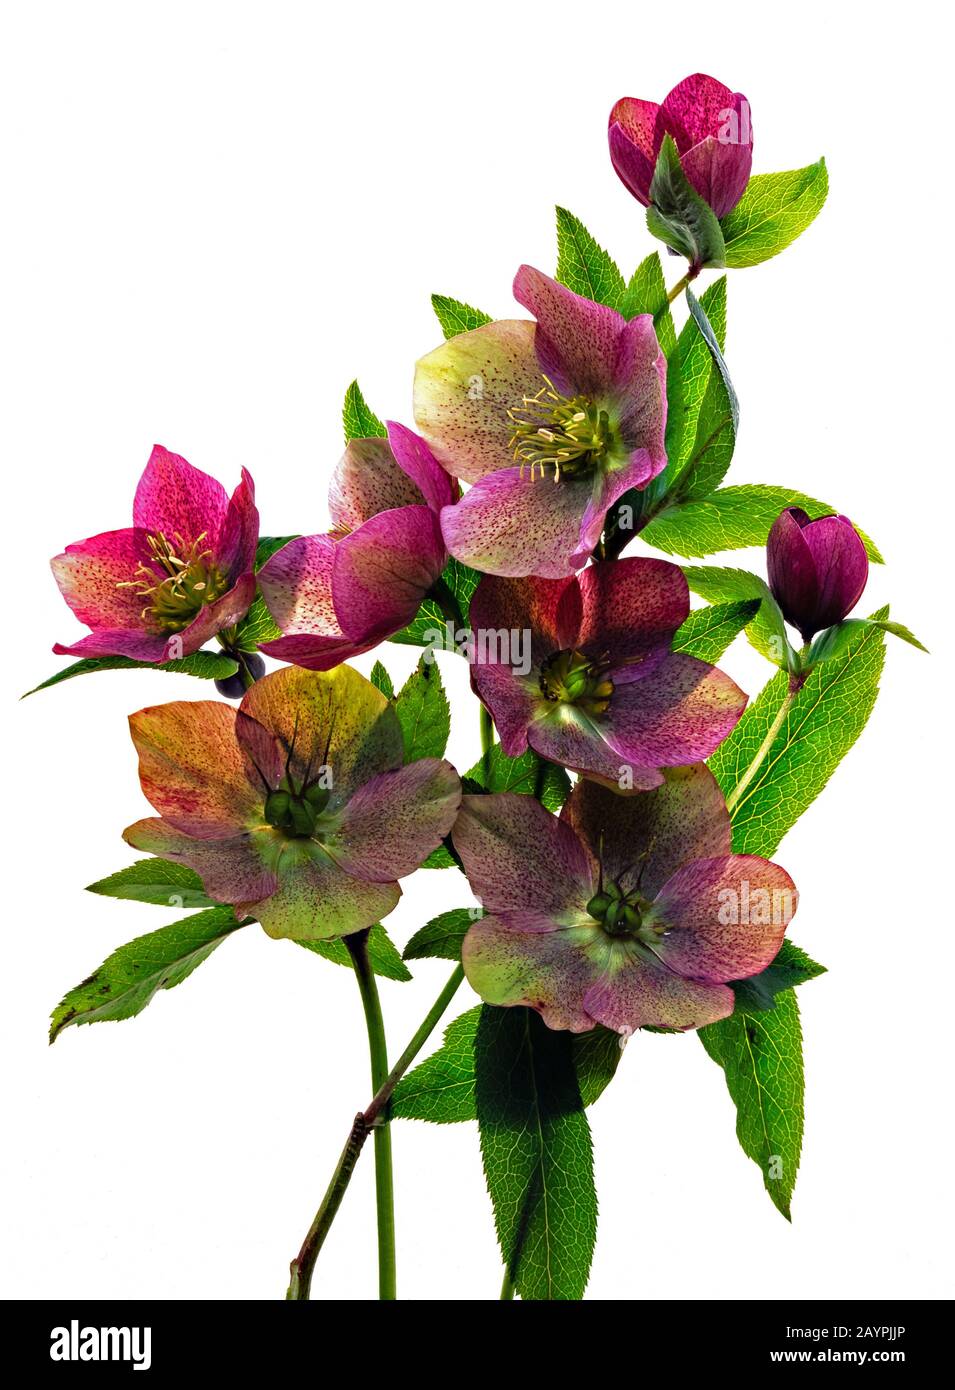 Anordnung der grünen und violetten Helleborus Nieswurz Blumen stammt und hinterlässt auf weißem Hintergrund. Stockfoto